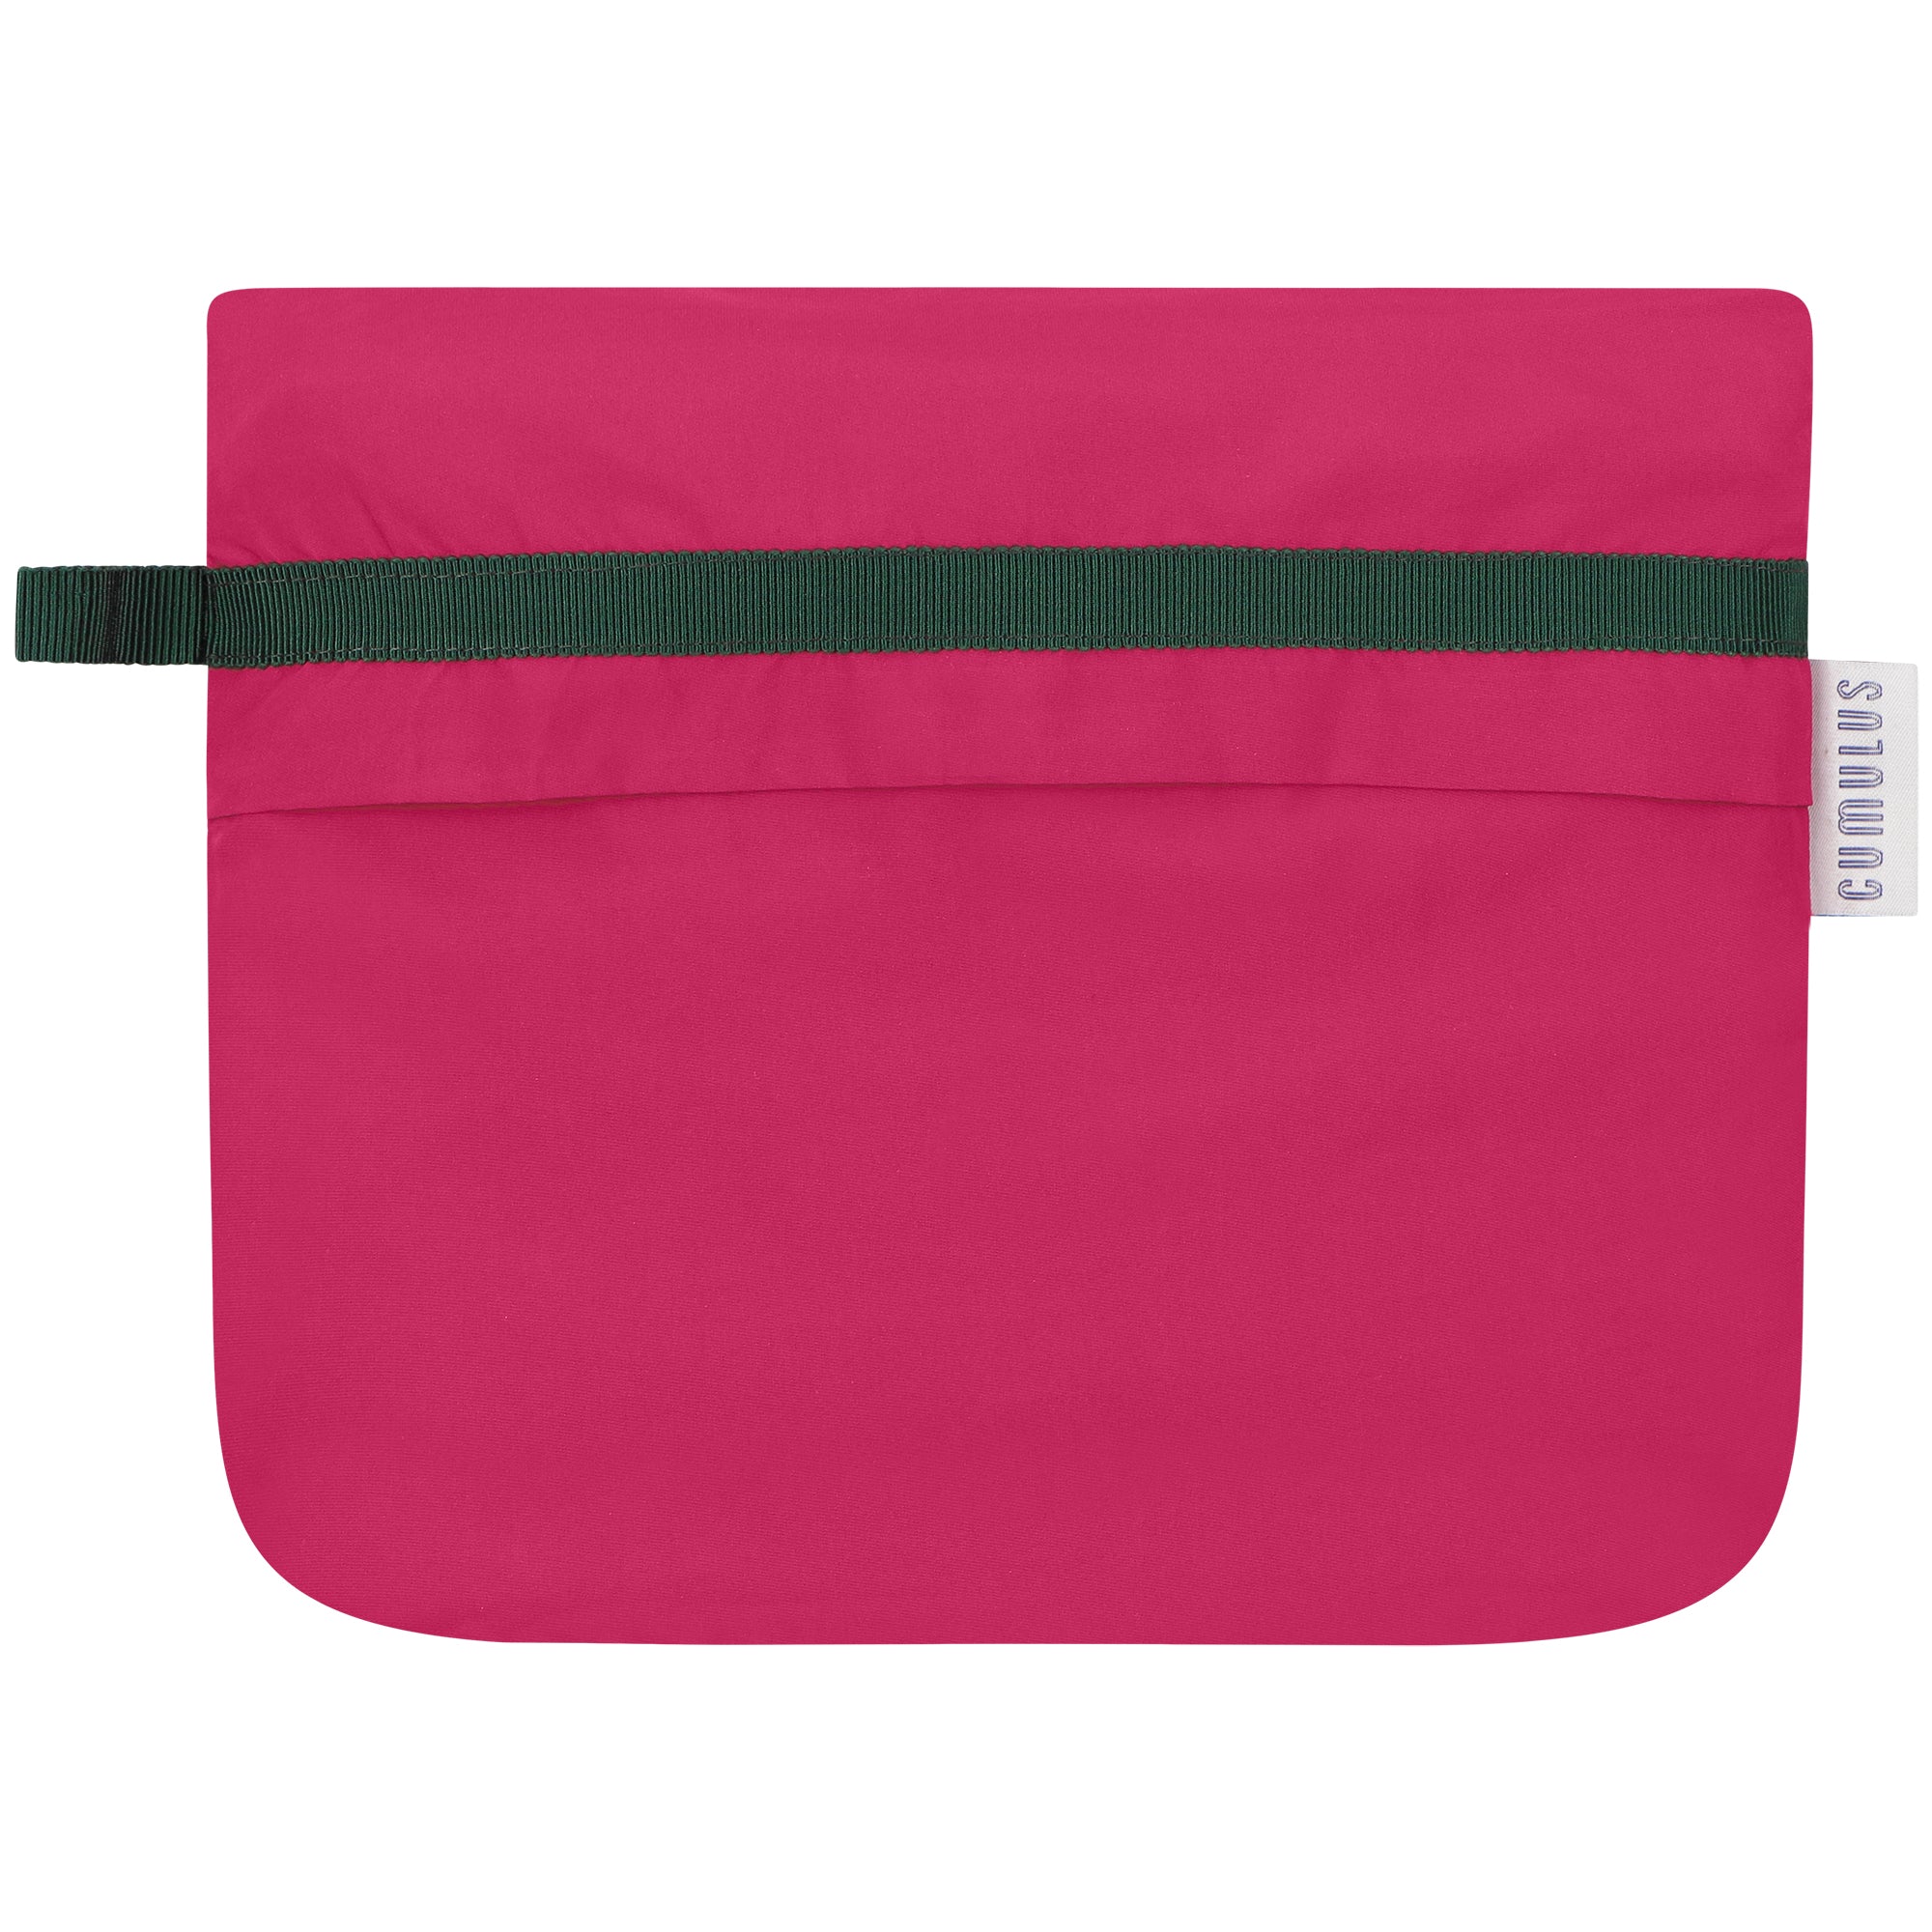 Bise raincoat - Cherry color - pouch bag